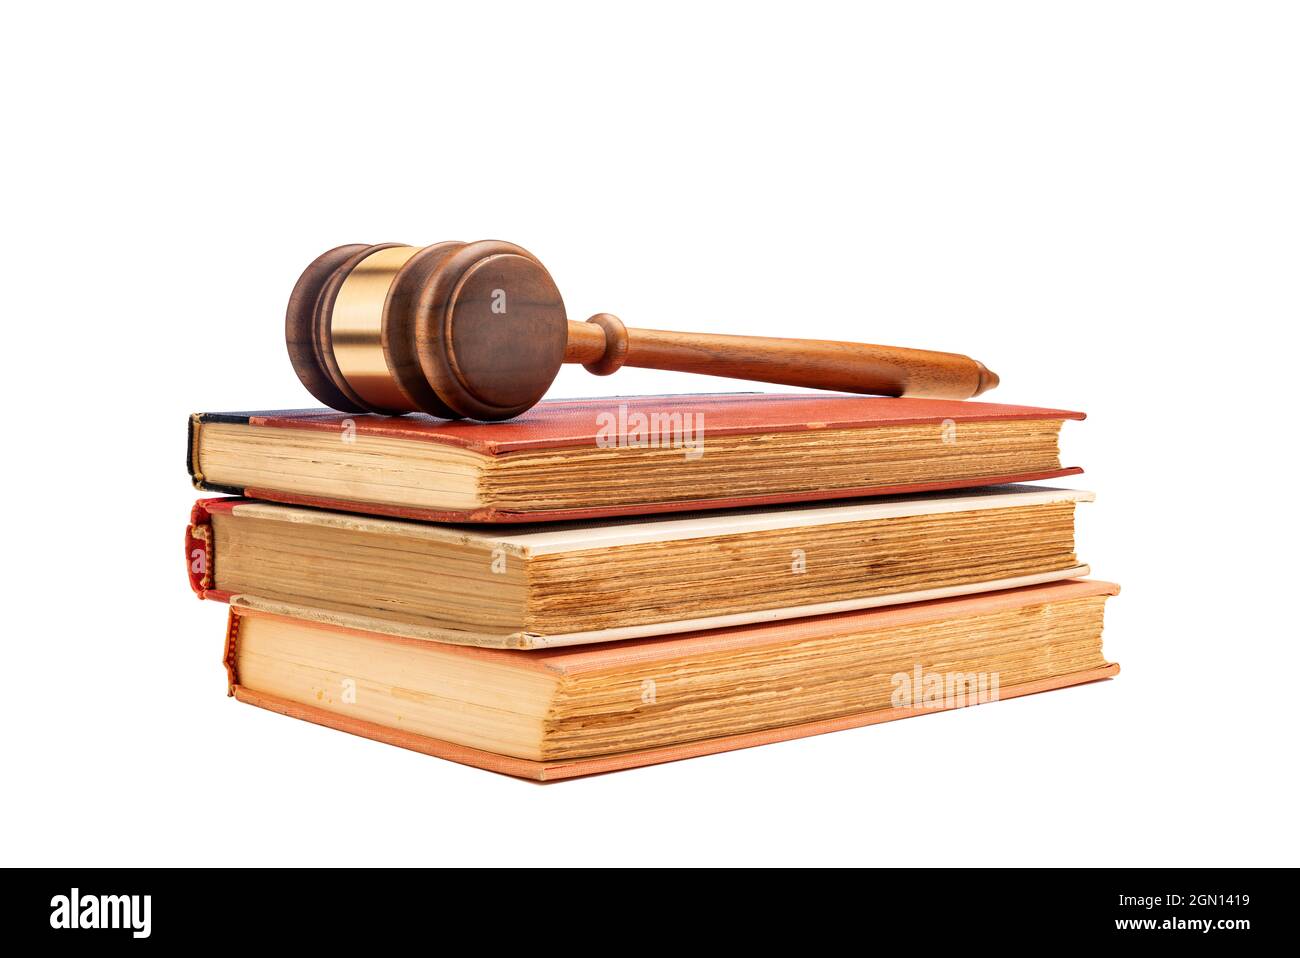 Il gavel di un giudice si trova in cima a tre vecchi libri di legge incorniciati su uno sfondo bianco per facilitare il posizionamento della copia. Foto Stock